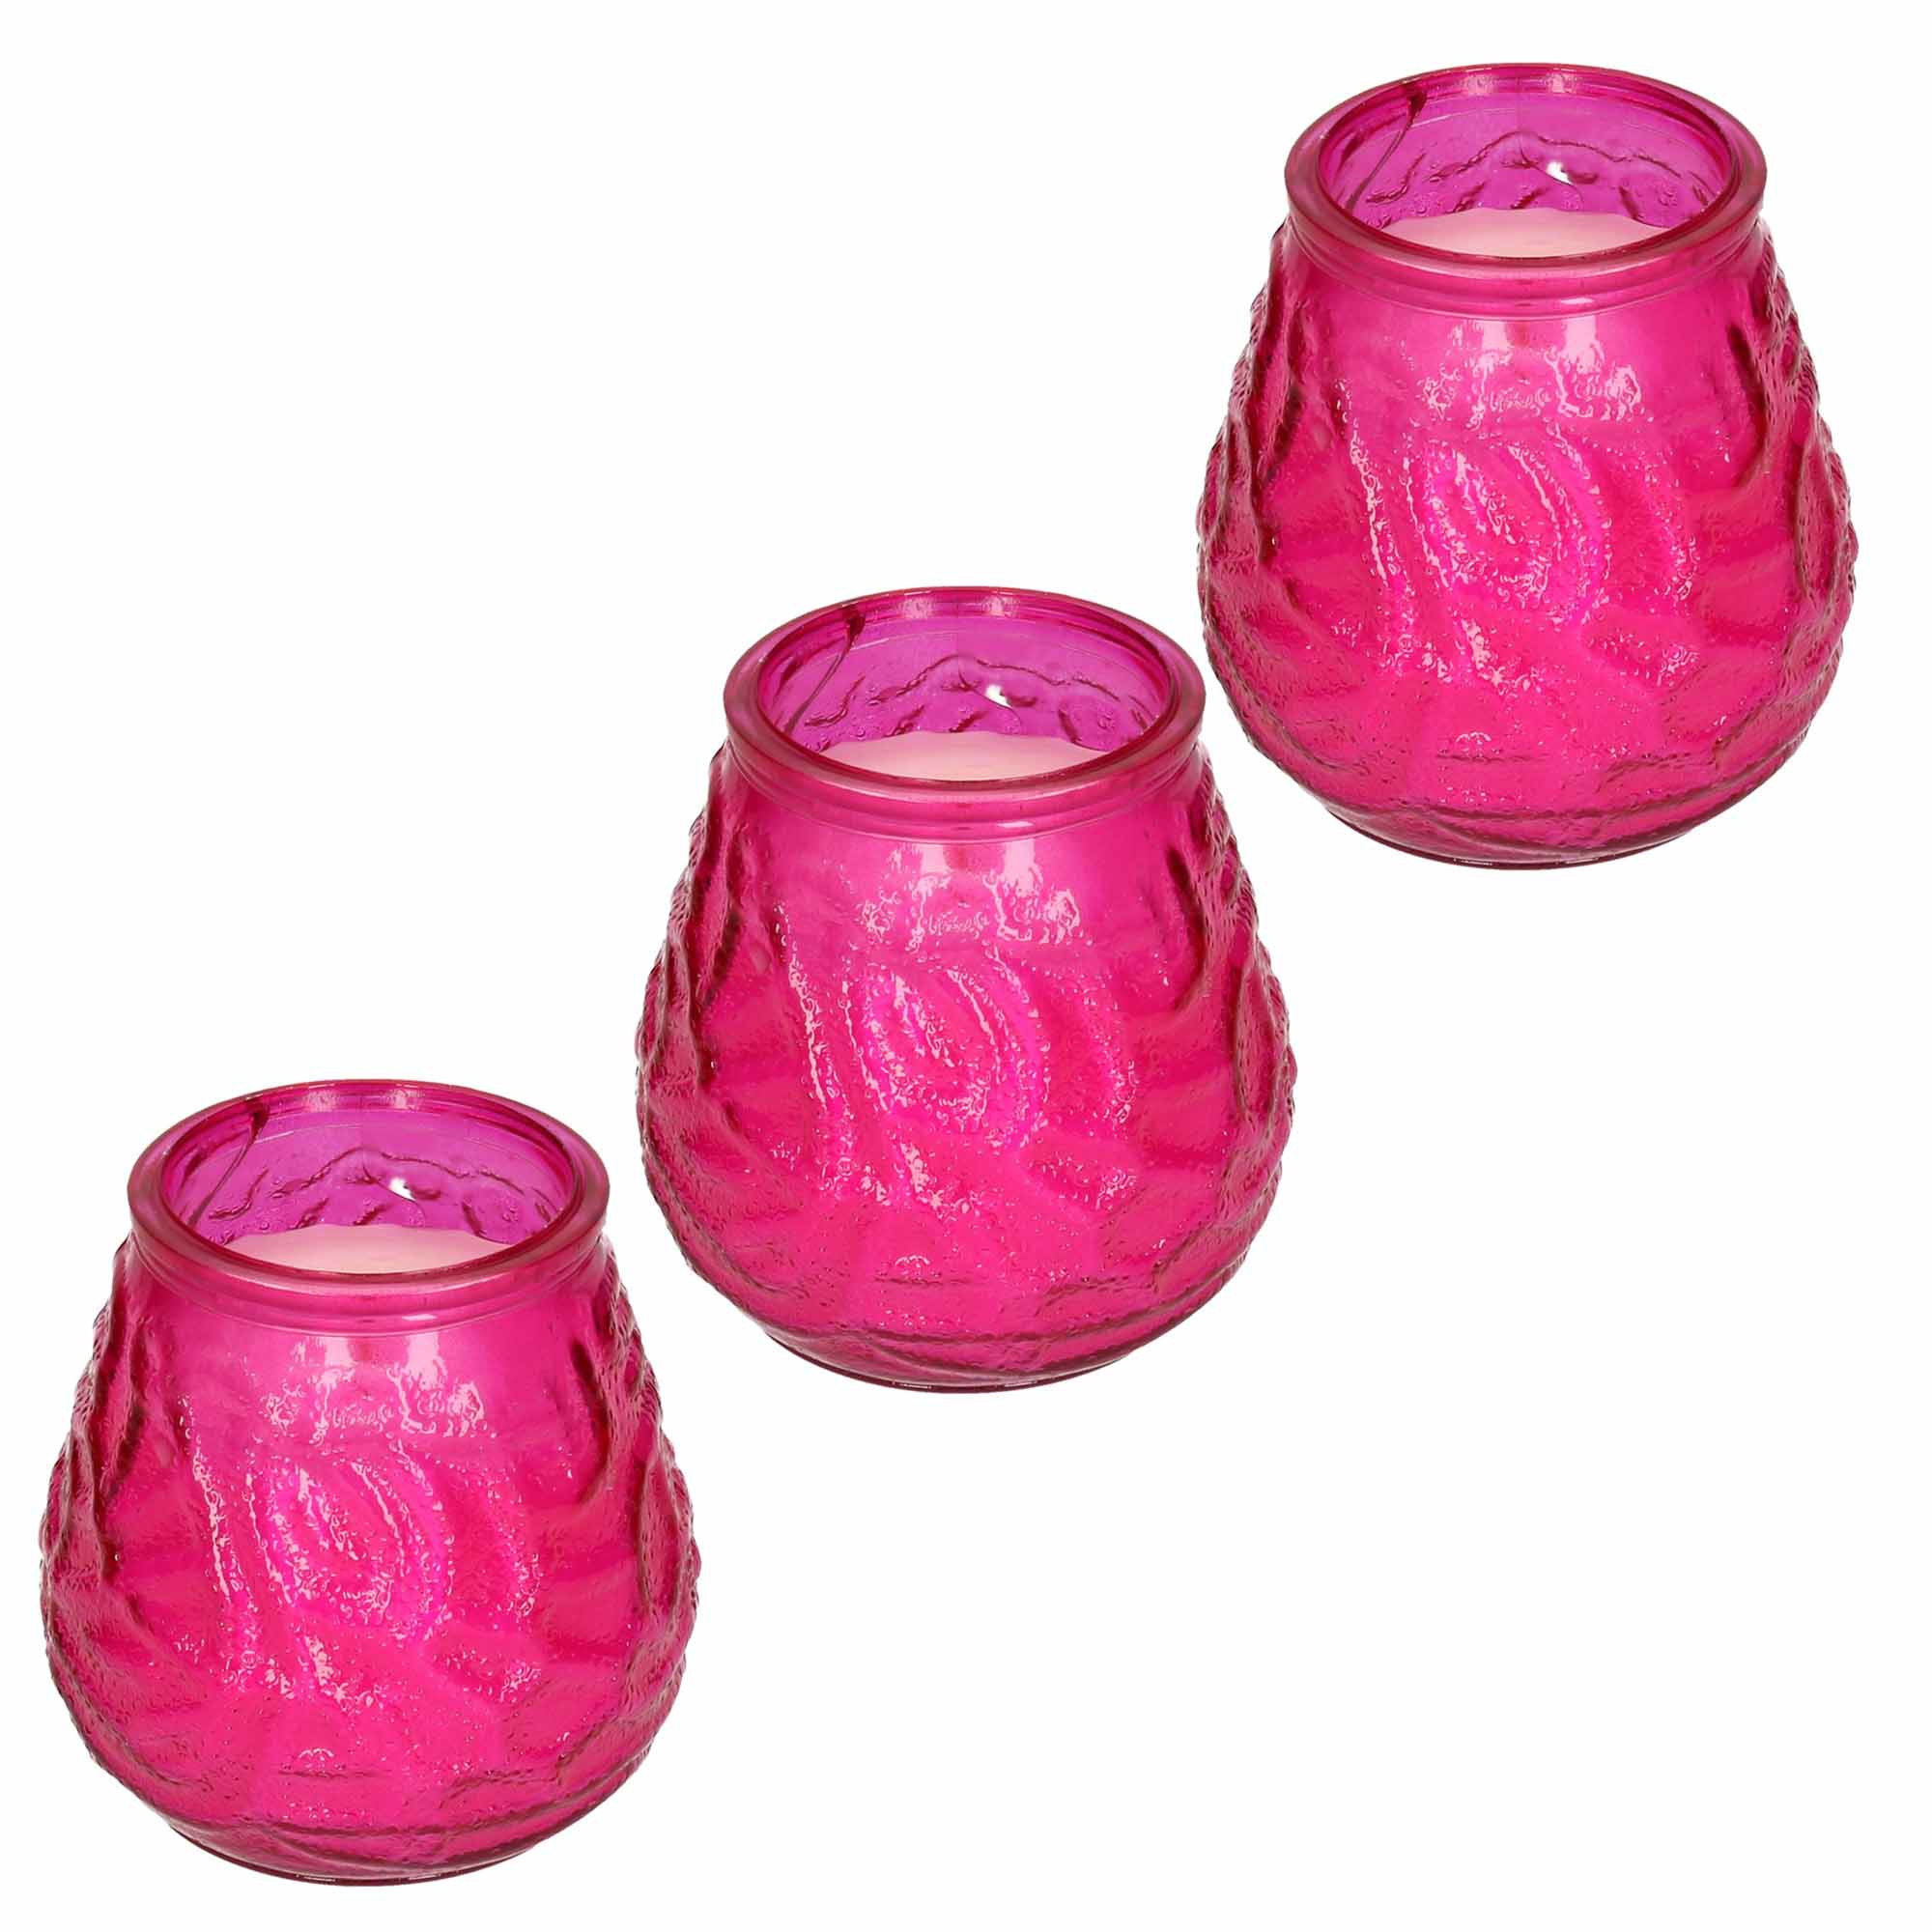 Windlicht geurkaars - 3x - roze glas - 48 branduren - citrusgeur